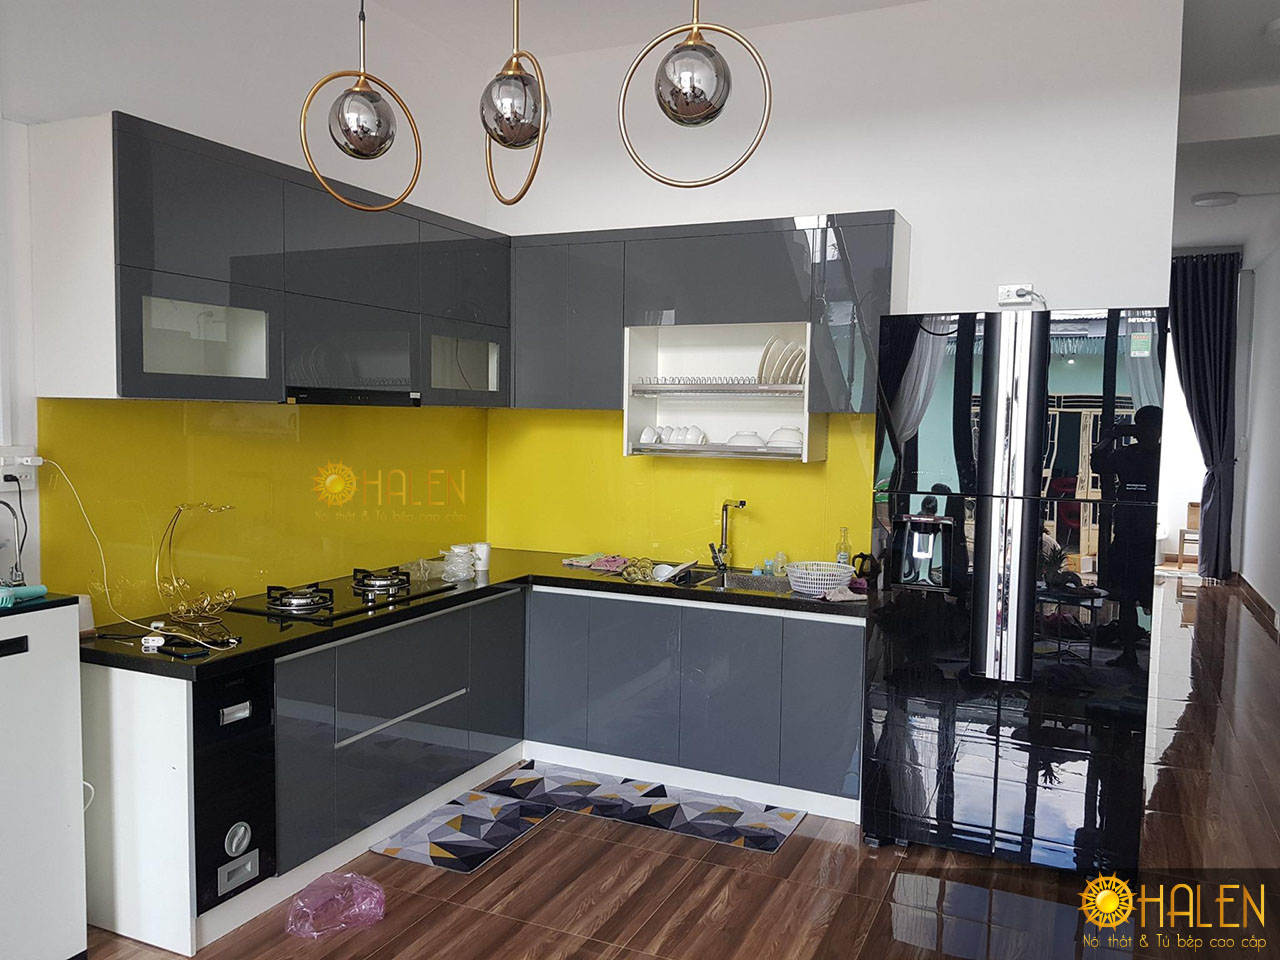 Kính bếp màu vàng là điểm nhấn cho bộ tủ bếp chất liệu Acrylic màu ghi sang trọng